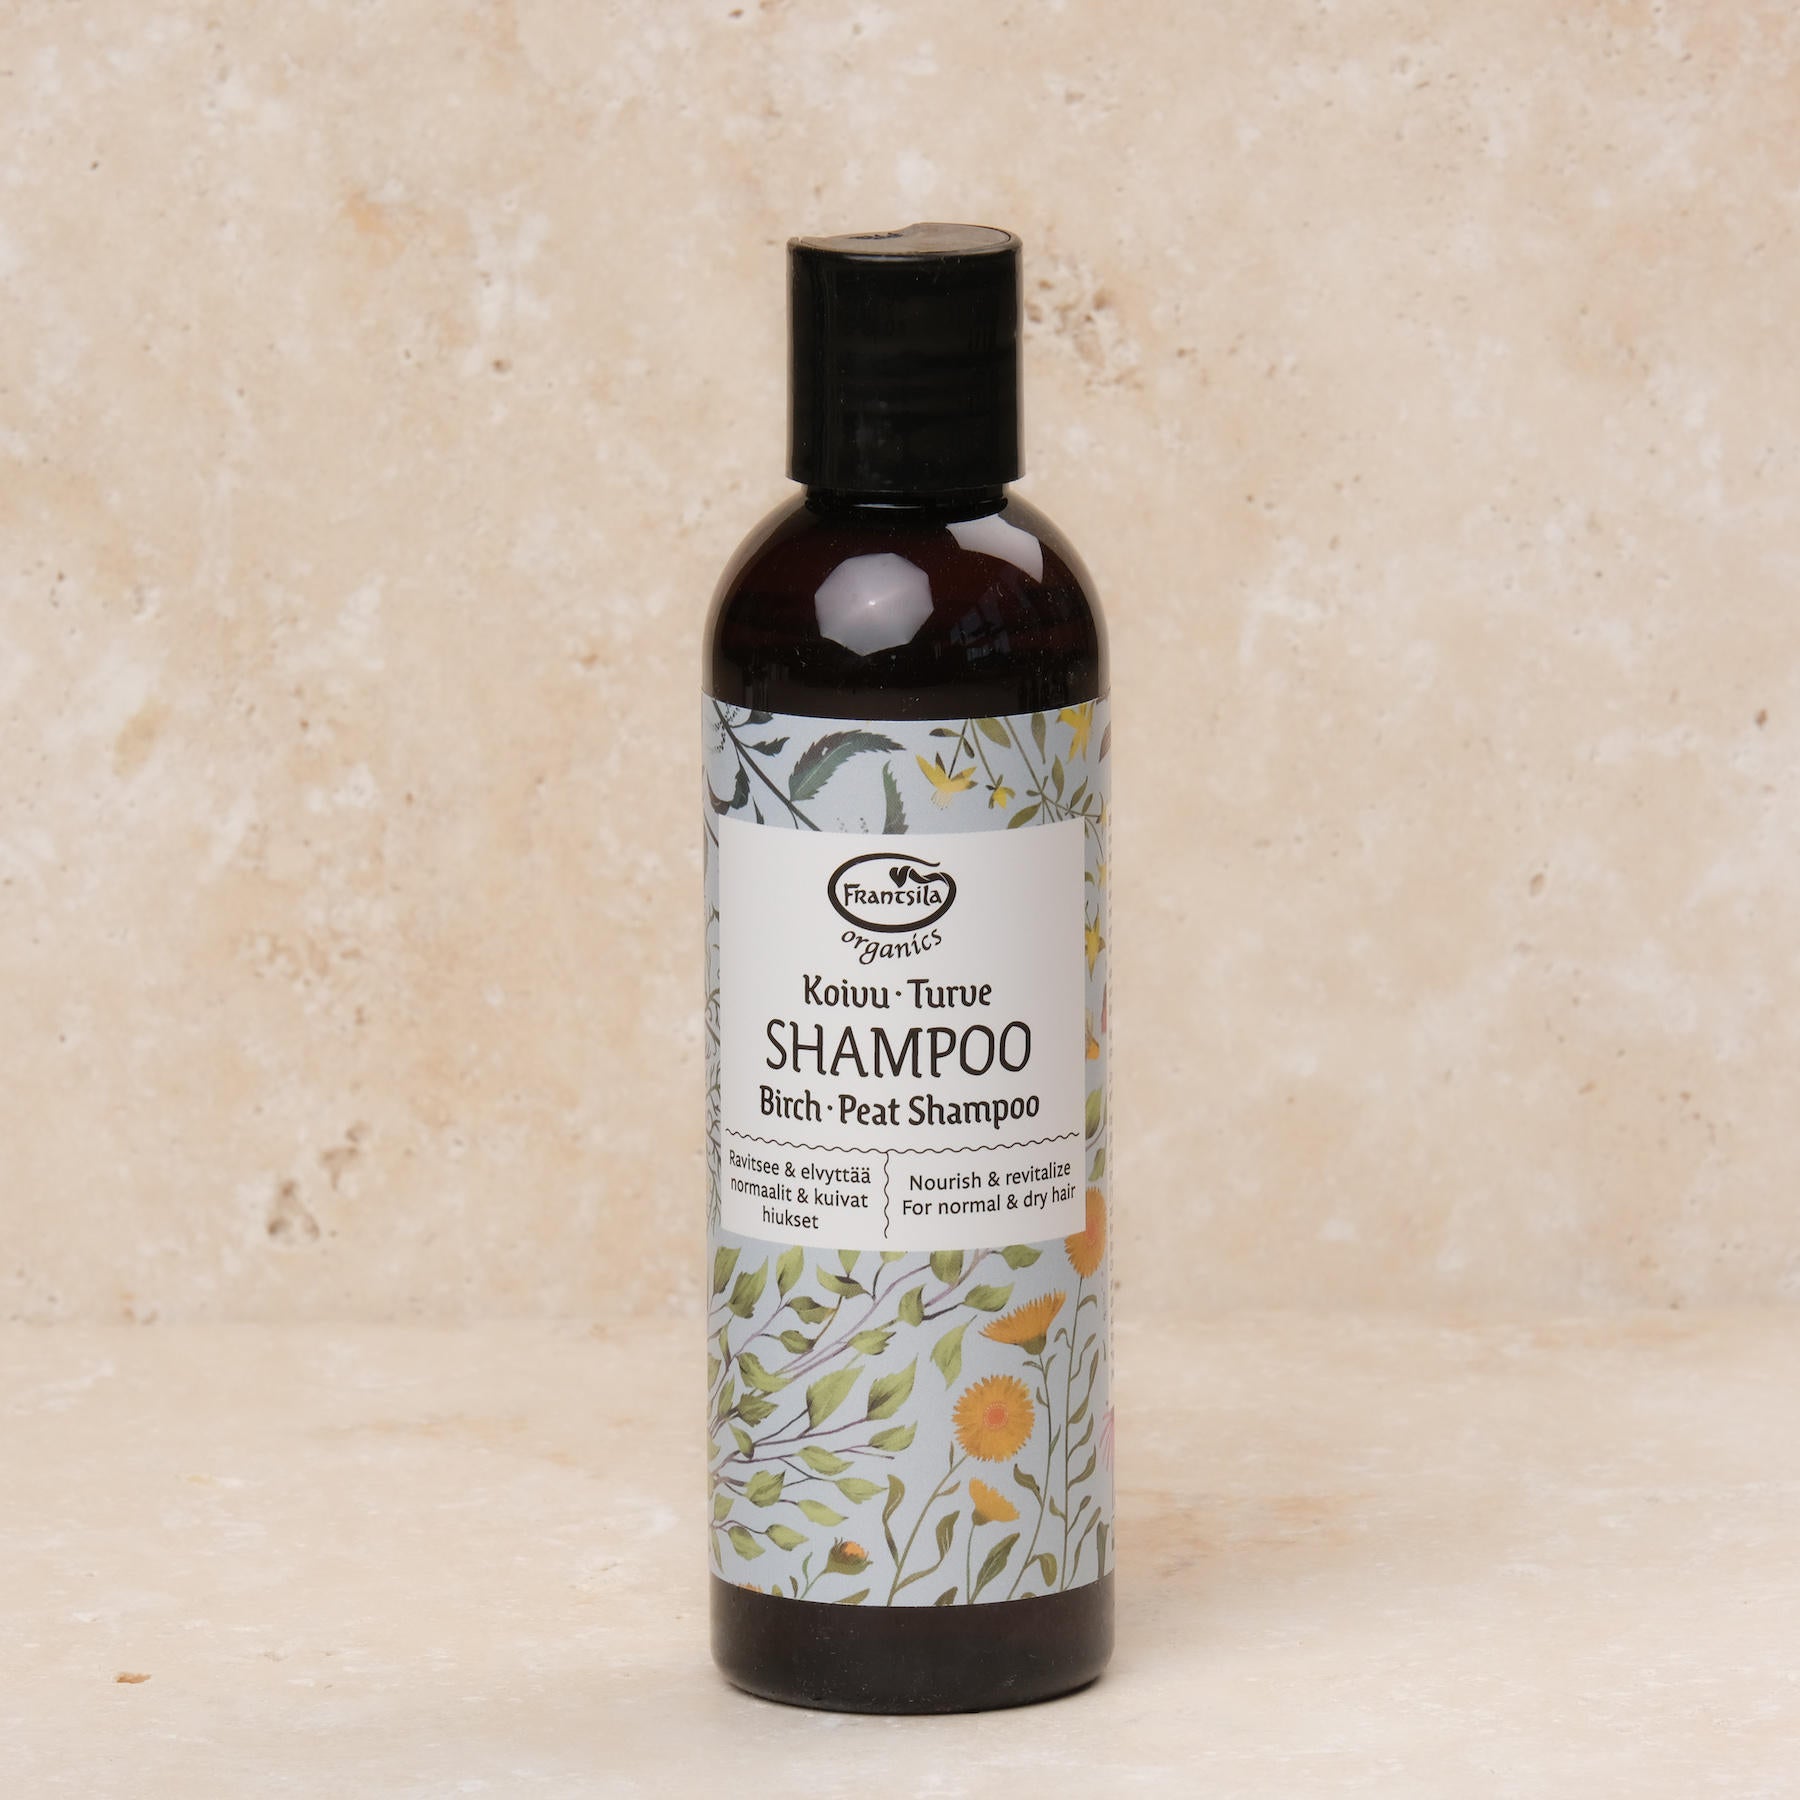 Shampoo alla torba di betulla, i migliori cosmetici naturali dalla Finlandia